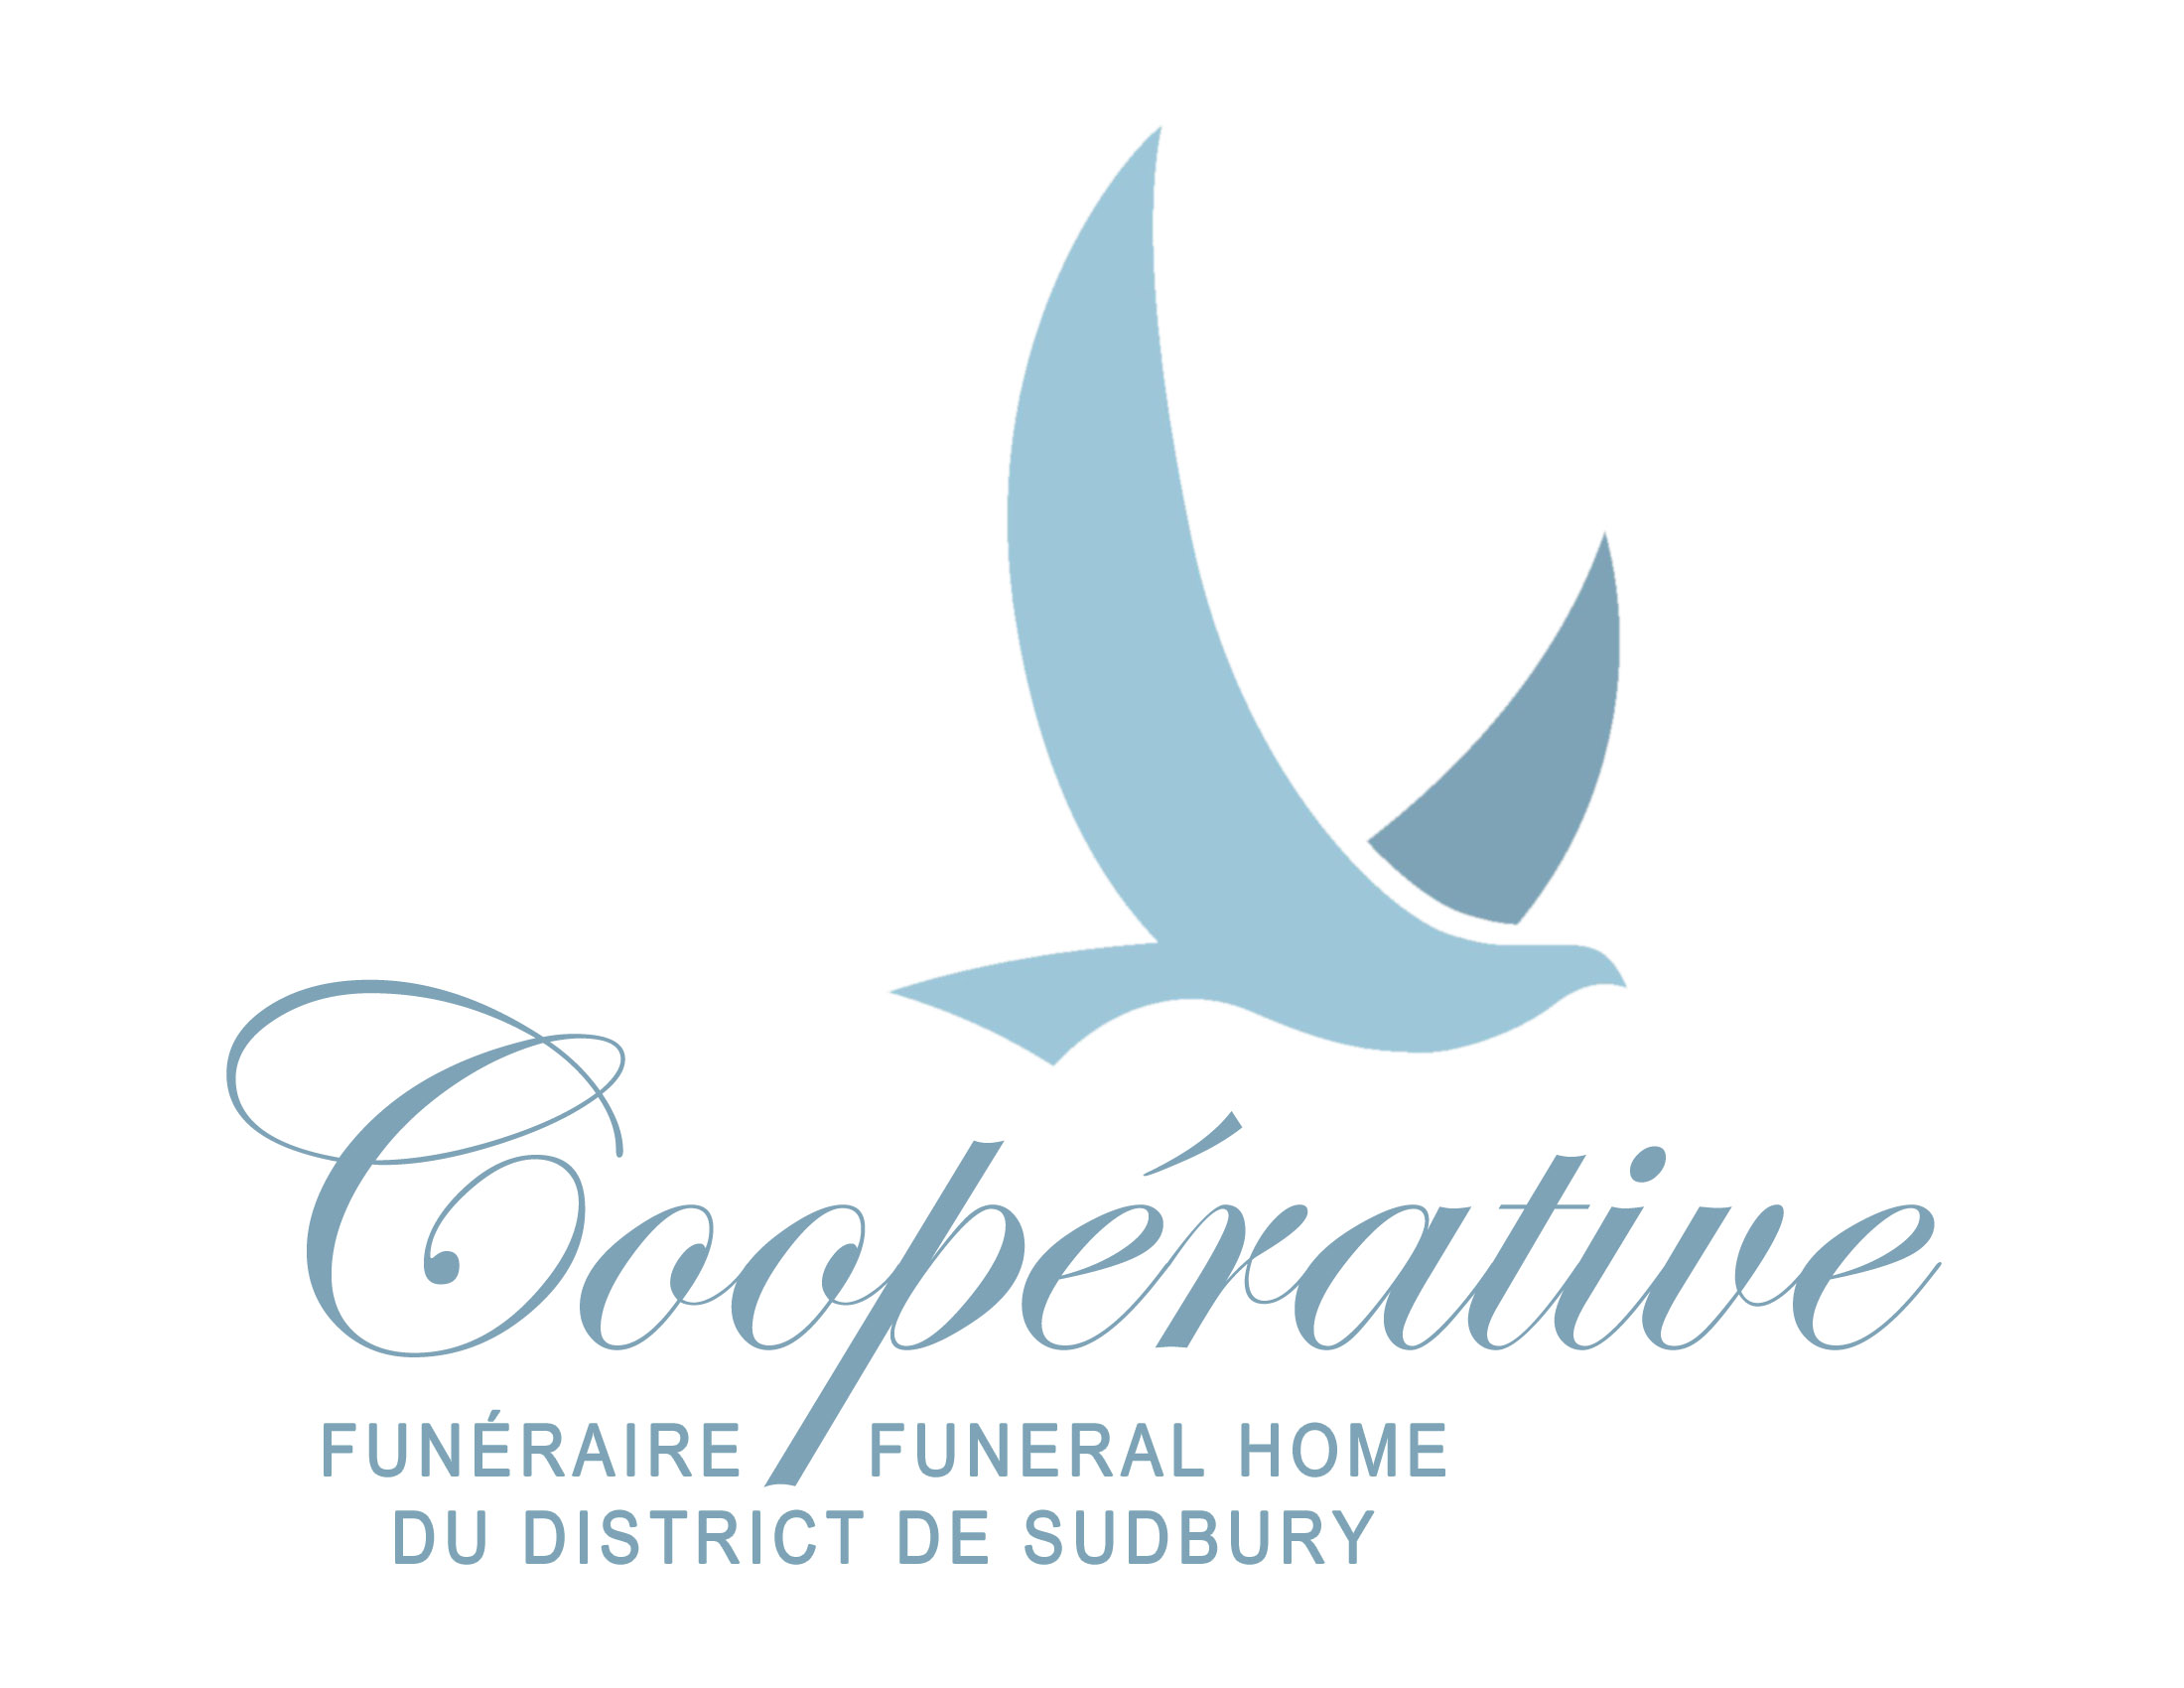 Co-opérative funéraire du district de Sudbury